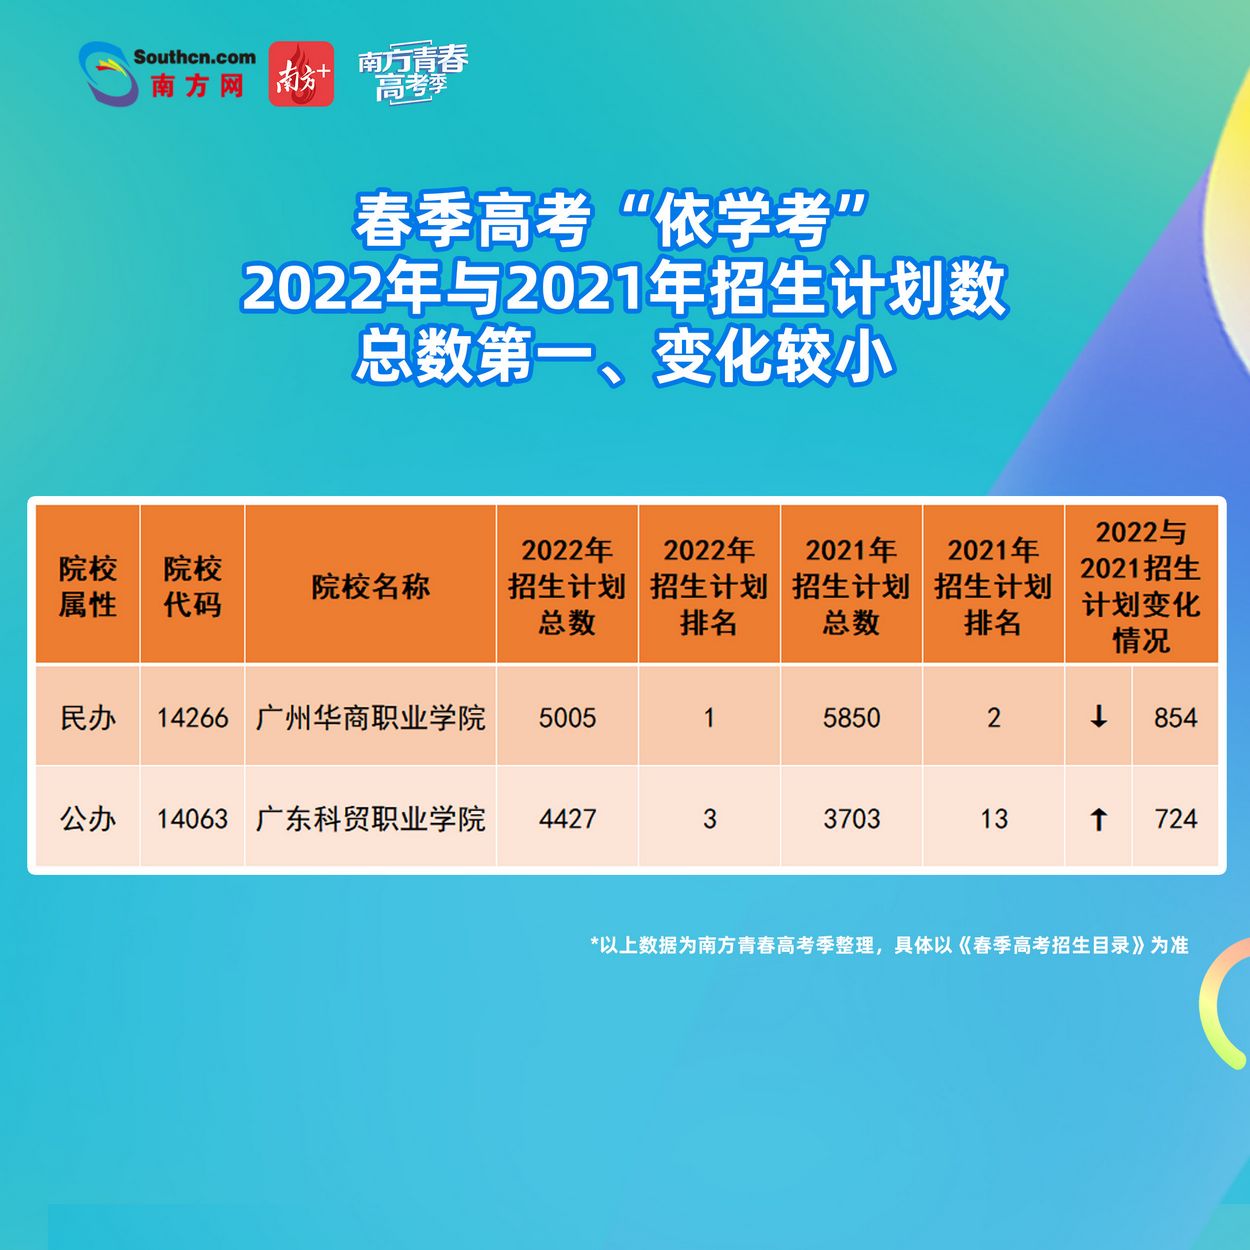 2022广东春季高考招生计划变化大填志愿时心里要有数,2020广东春季高考志愿填报指南